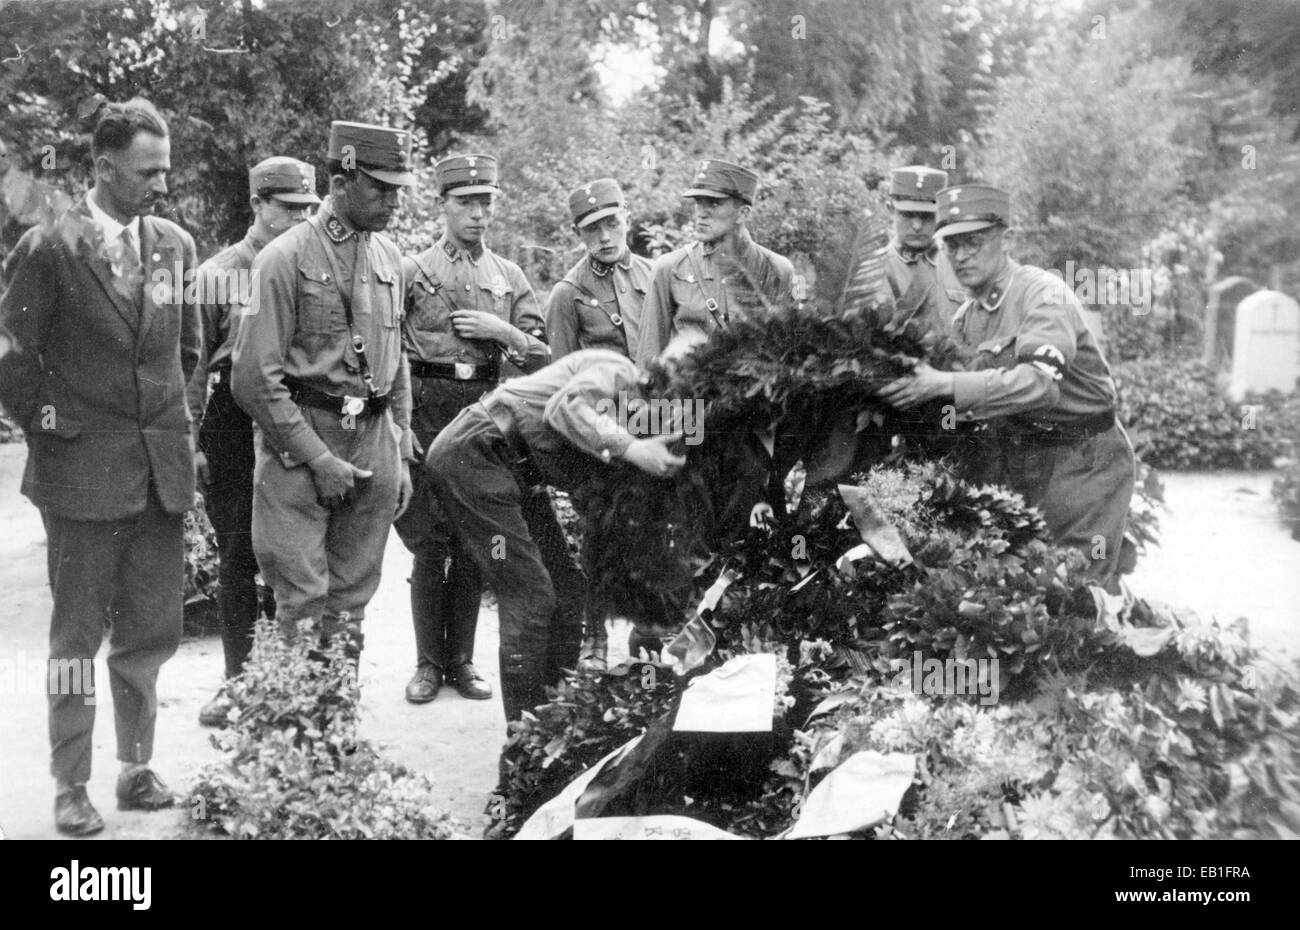 SA (Sturmabteilung) Truppen legten einen Kranz von Adolf Hitler auf das Grab während der Beerdigung von Walter Bluemel, Der im sog. "Kampf für die Bewegung" getötet wurde und danach 1931 in Sachsen als "Leipzig Blutzeuge der Bewegung" bekannt war. Fotoarchiv für Zeitgeschichtee - KEIN KABELDIENST Stockfoto